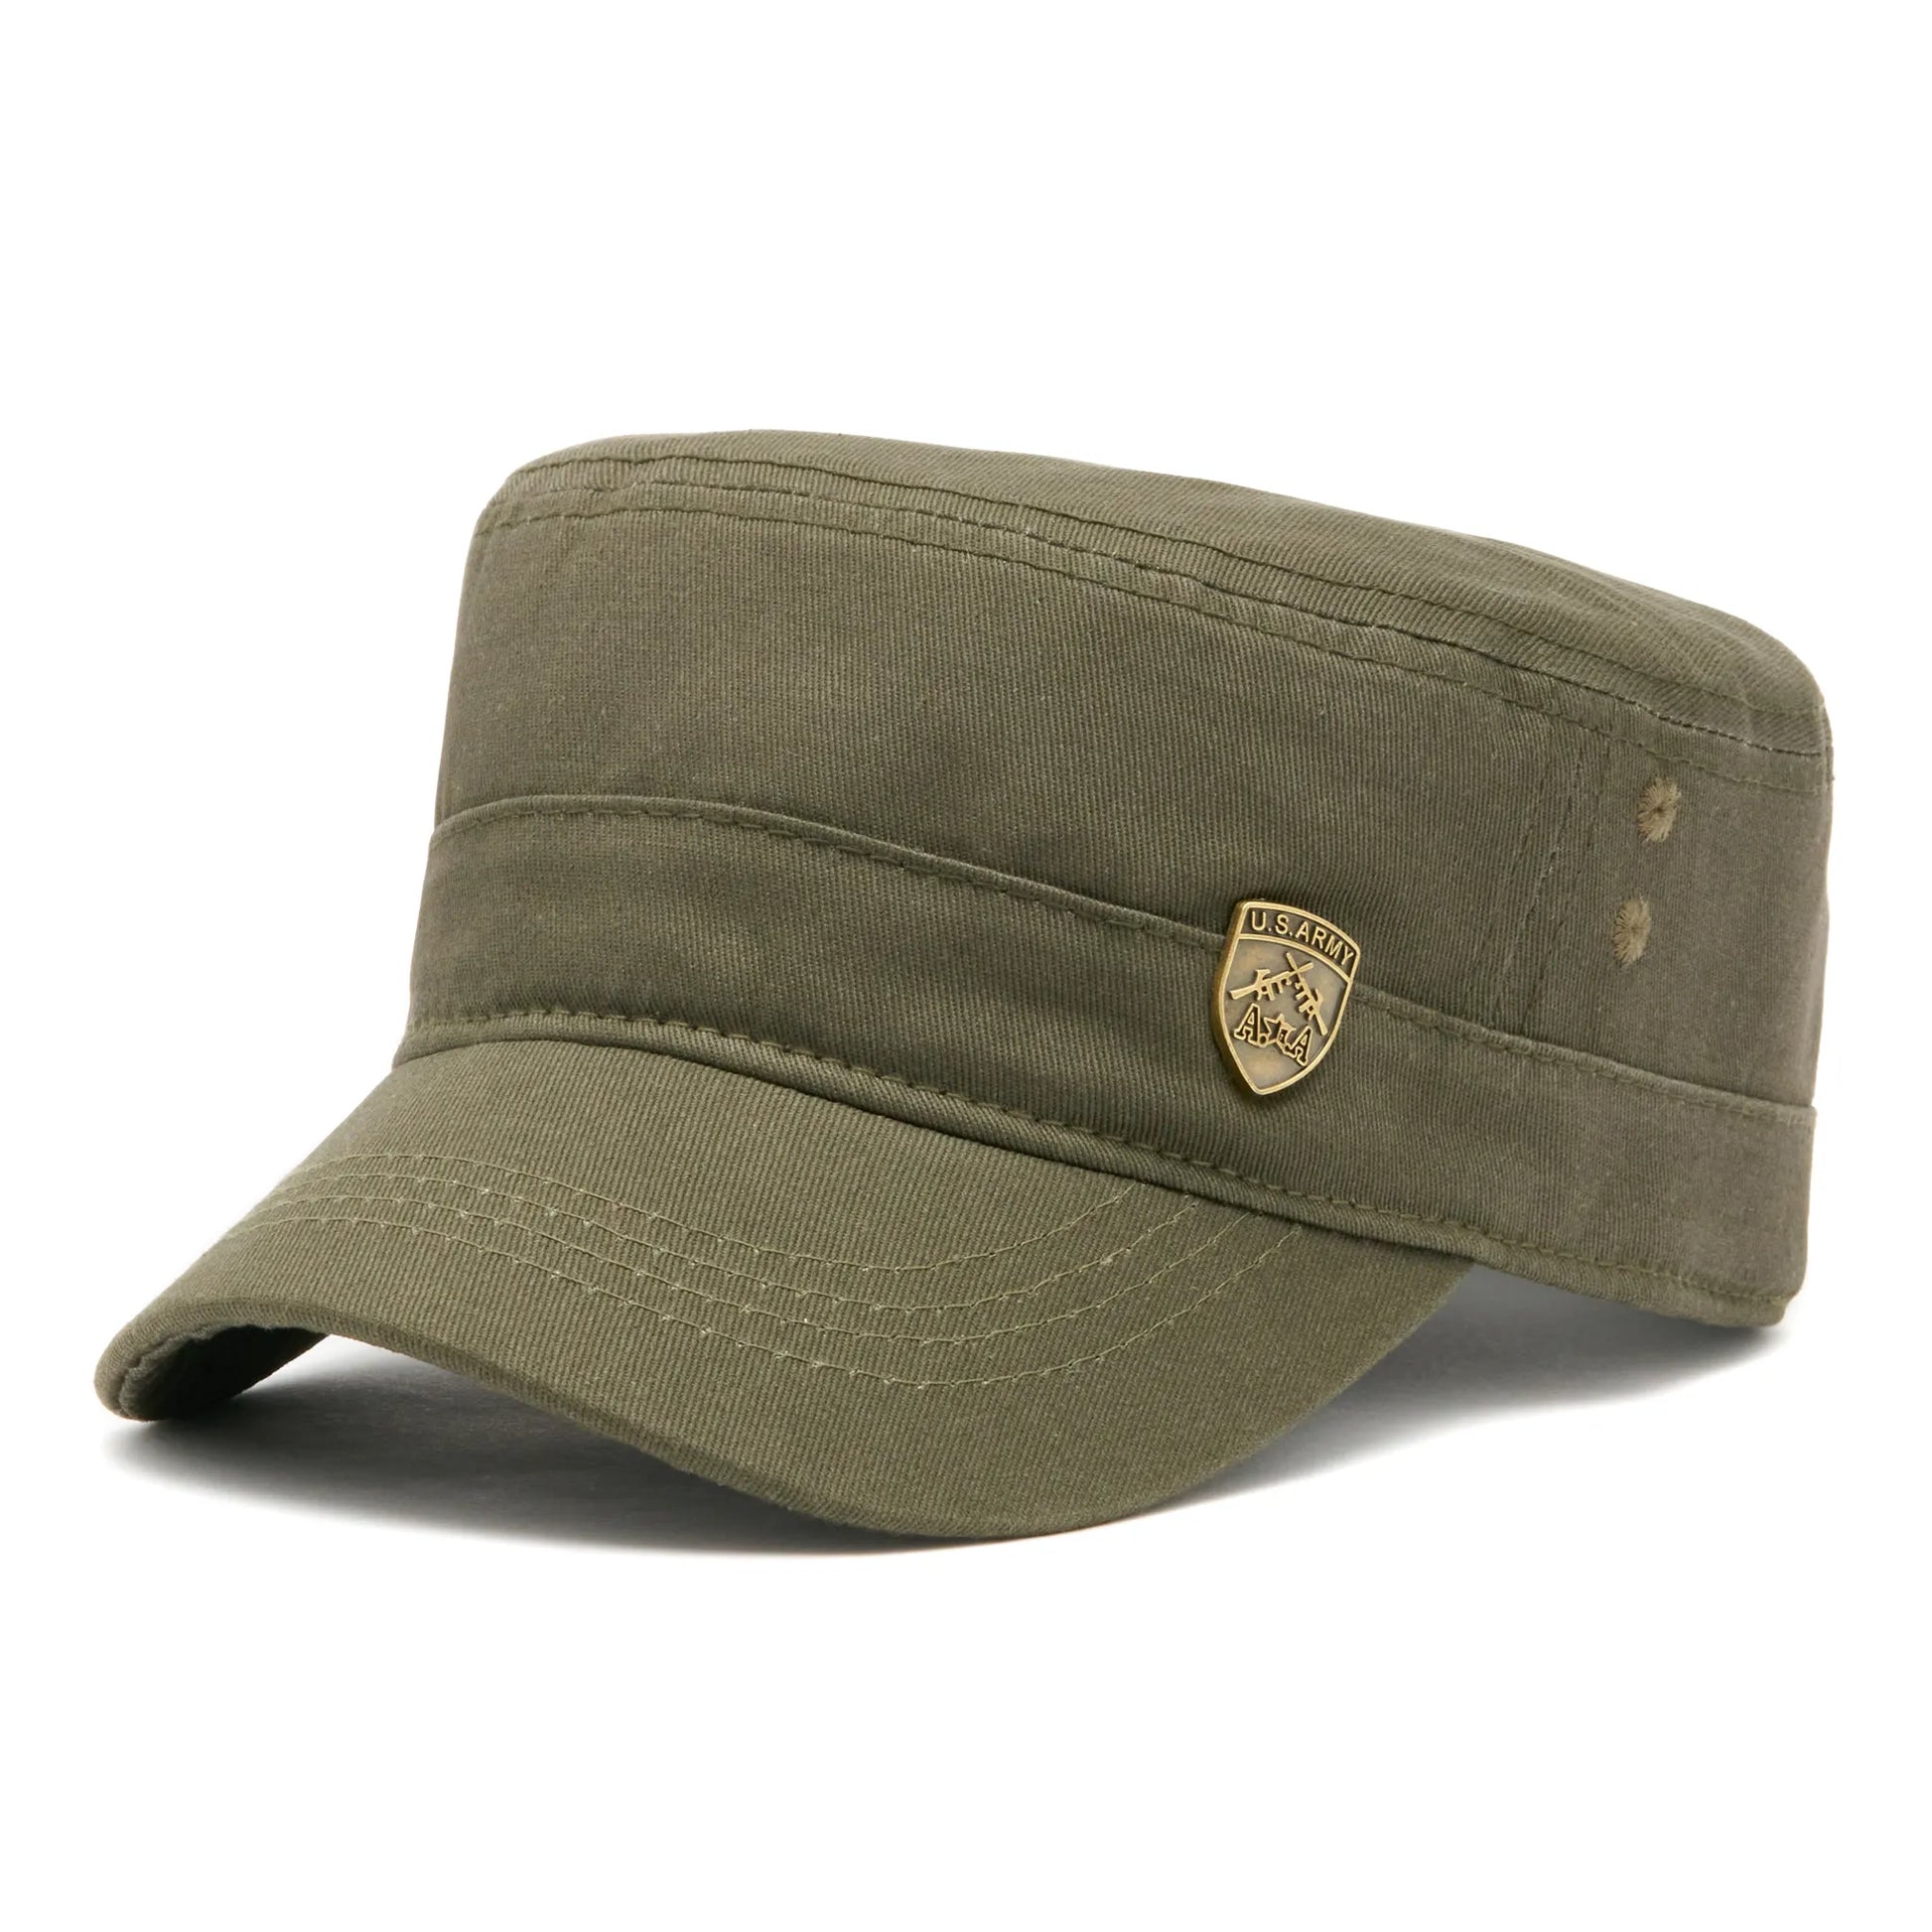 Șapcă militară US Army din bumbac pe culoarea kaki cu mărime universală prin cataramă reglabilă.